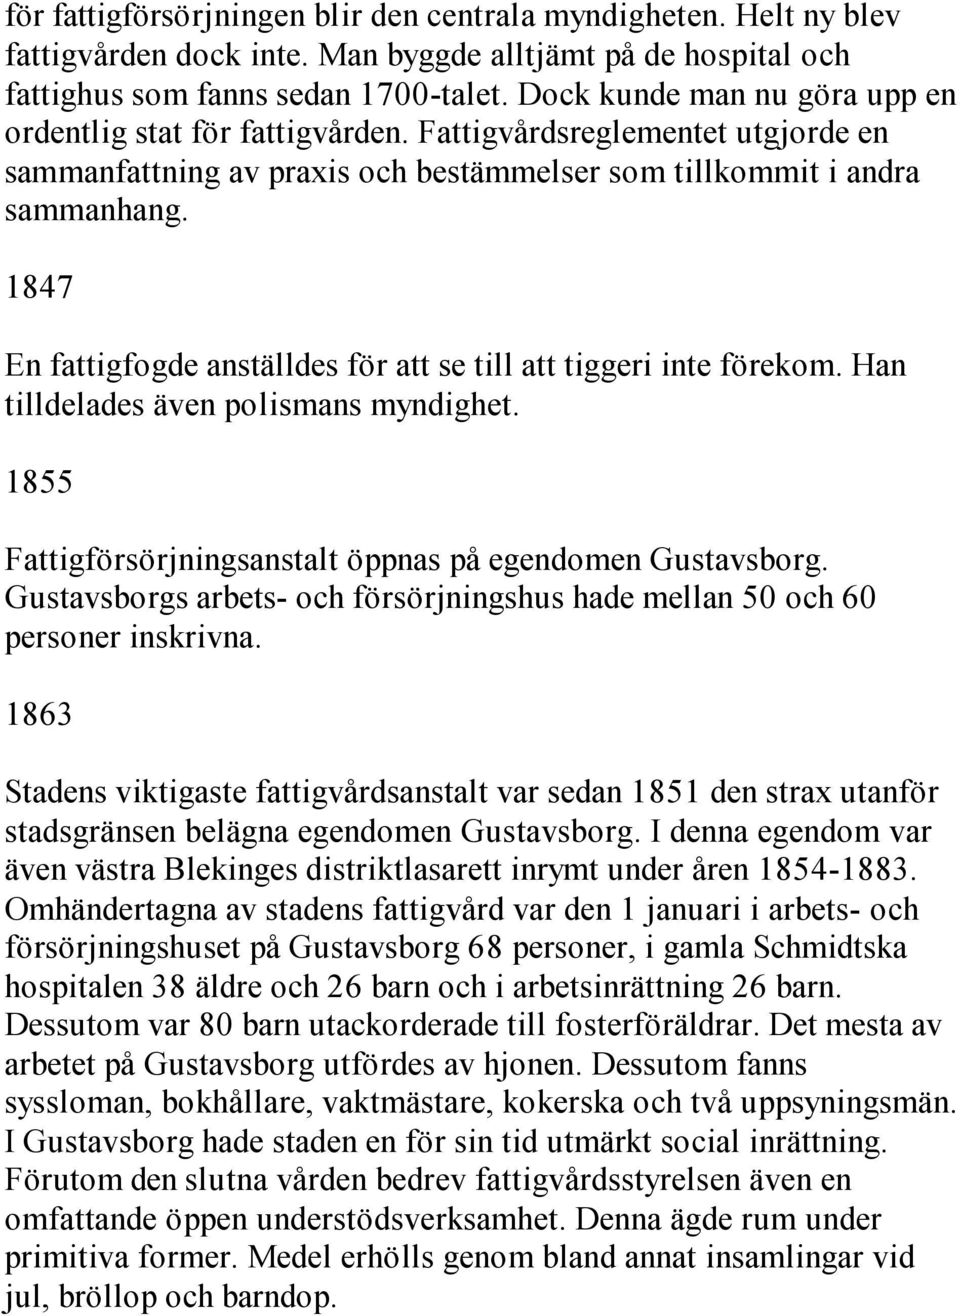 1847 En fattigfogde anställdes för att se till att tiggeri inte förekom. Han tilldelades även polismans myndighet. 1855 Fattigförsörjningsanstalt öppnas på egendomen Gustavsborg.